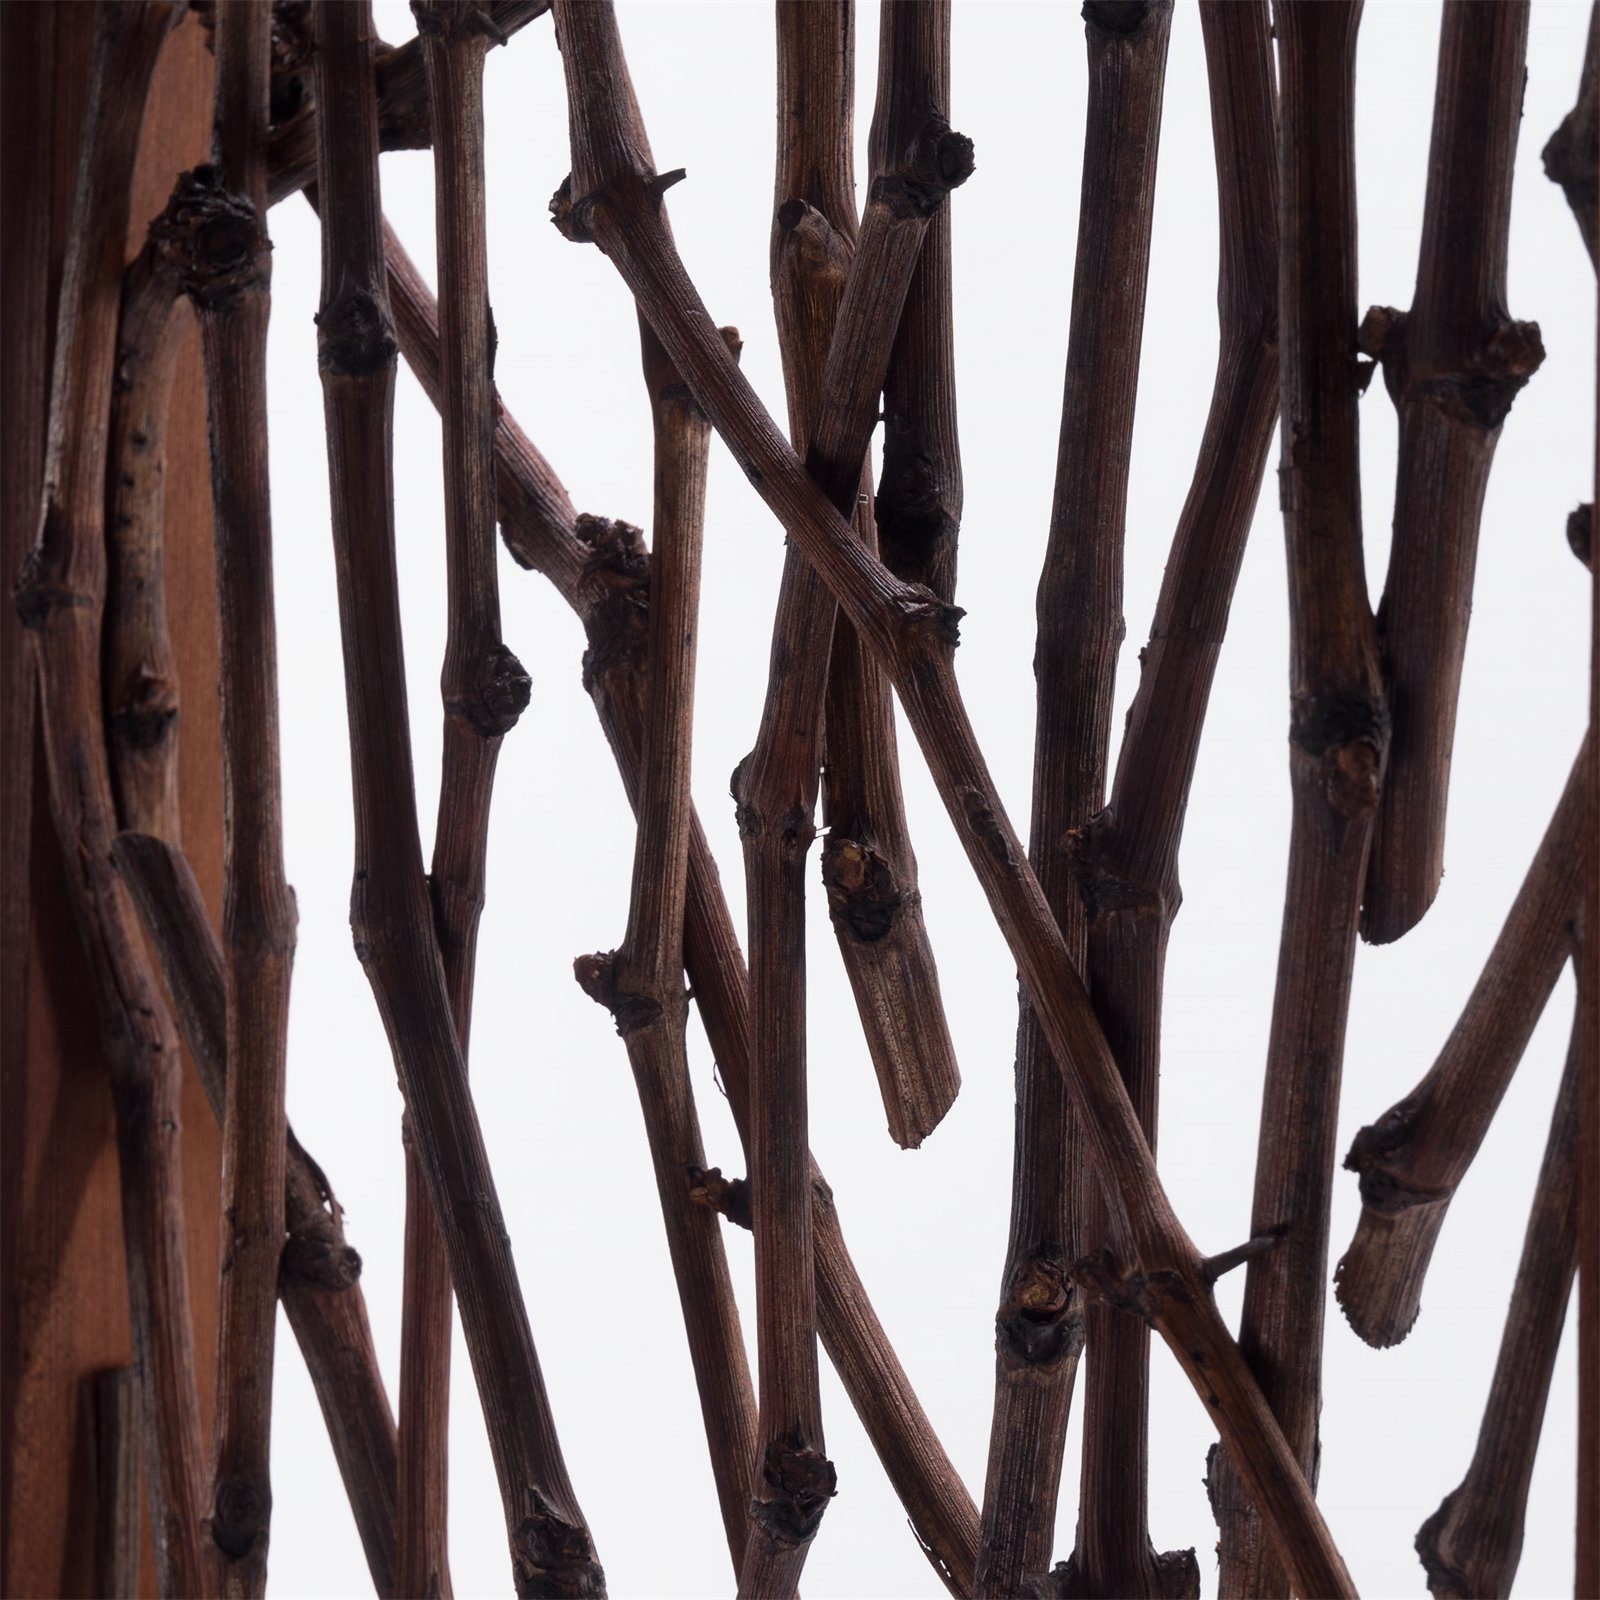 Holz, CREEDWOOD Paravent 170cm, ZWEIGE Äste "FORES", RAUMTEILER Paravent